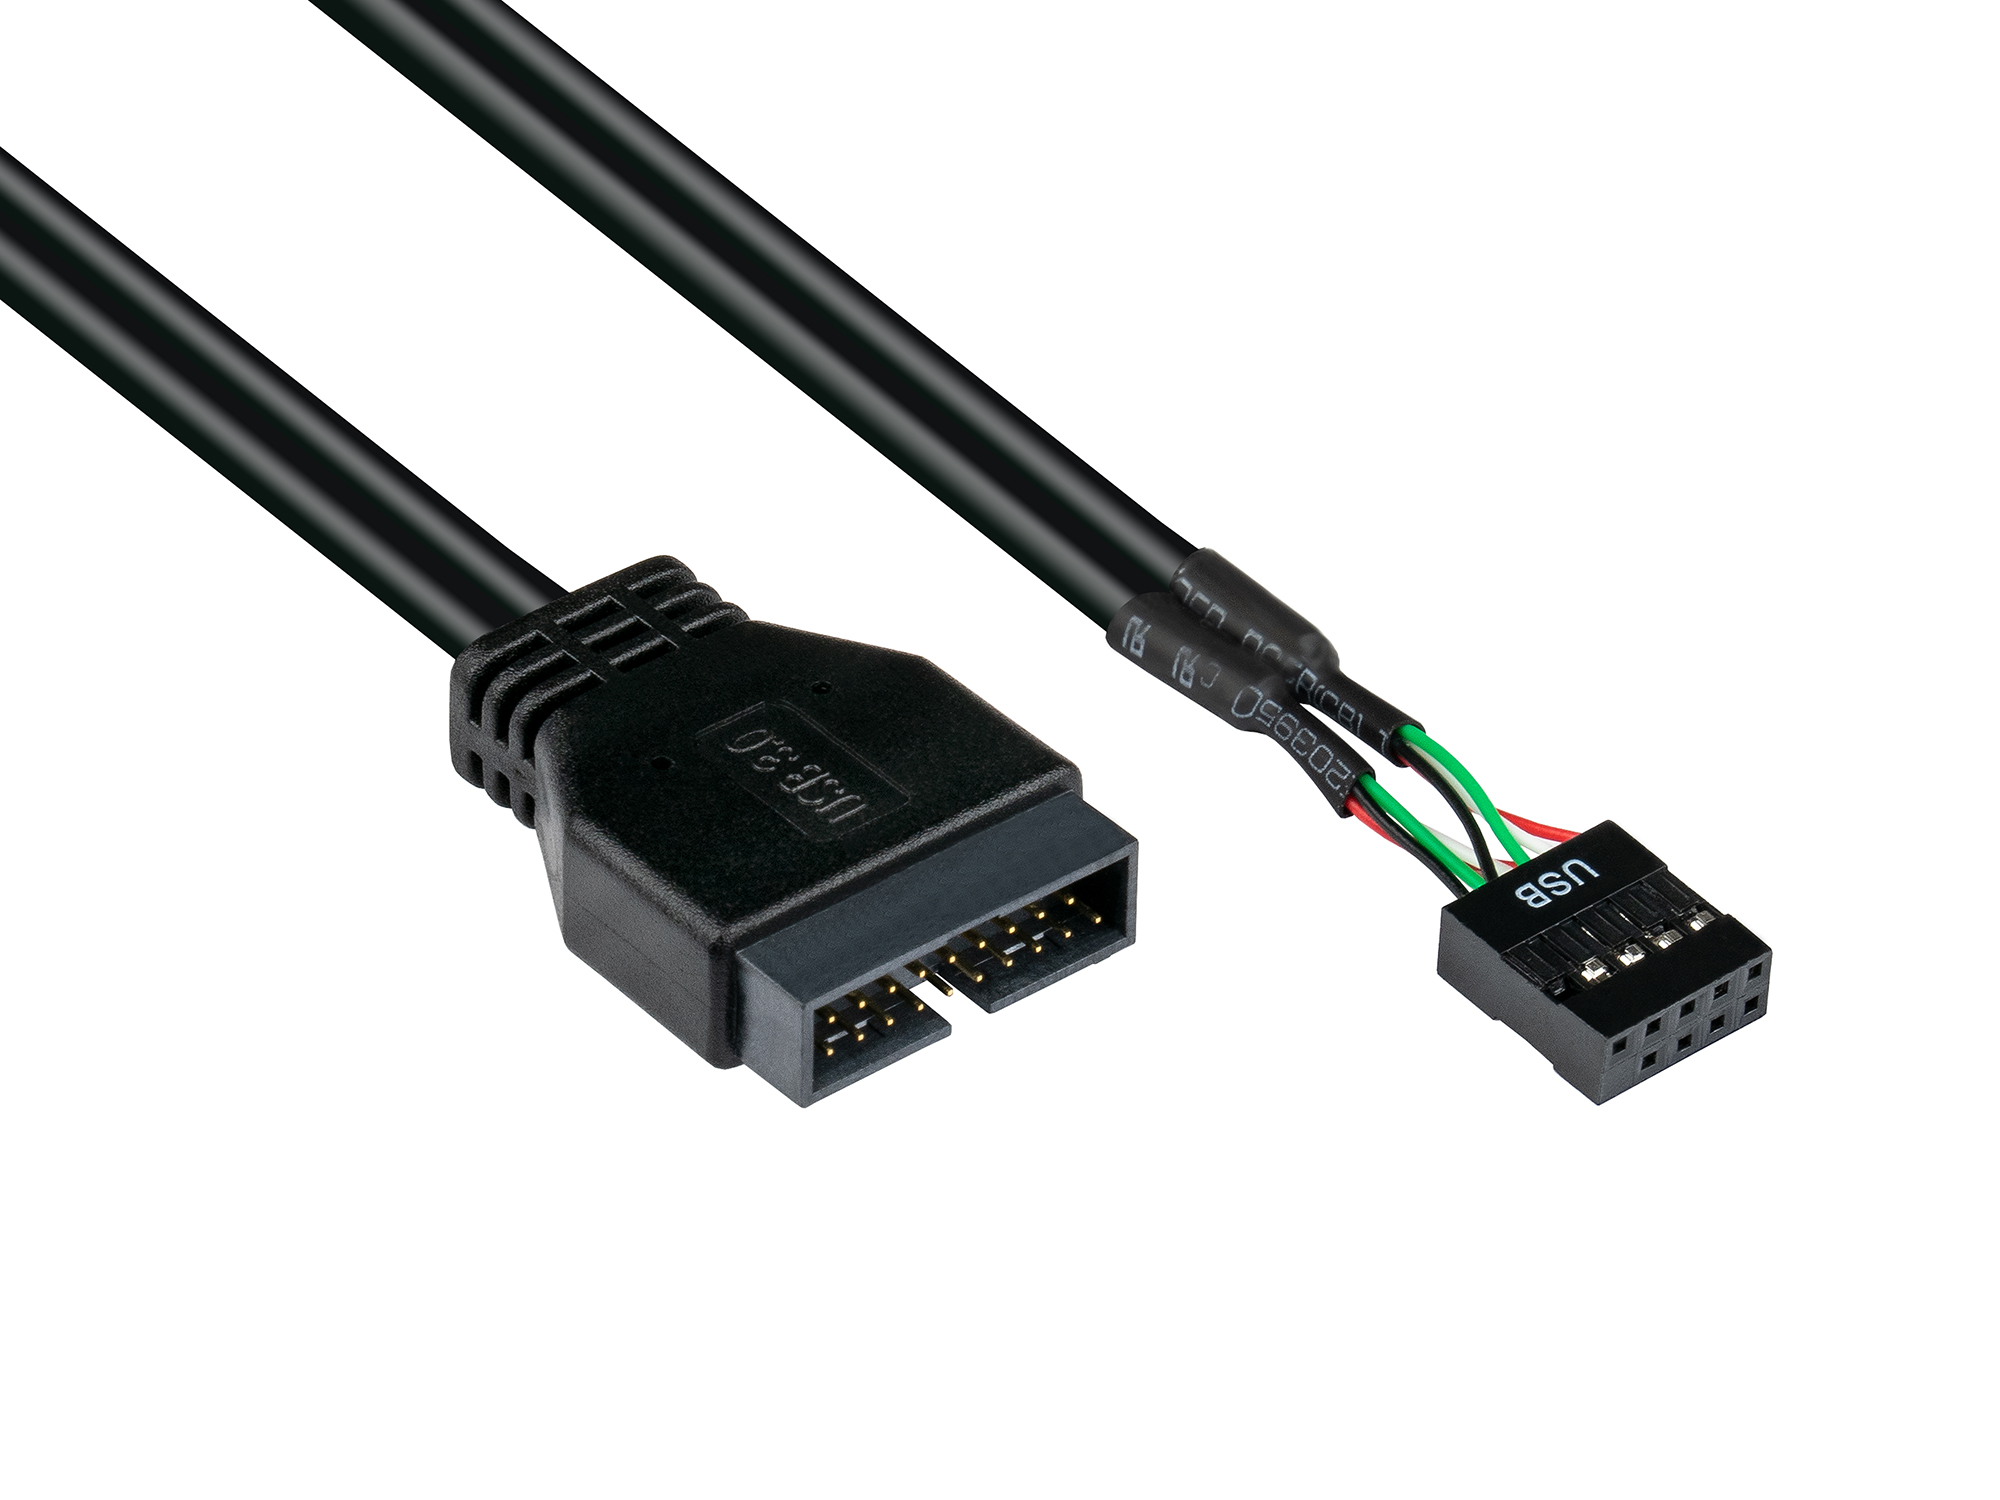 Adapter intern USB 3.0 Pin-Header Stecker an USB 2.0 Pin-Header Buchse, schwarz, 0,3m